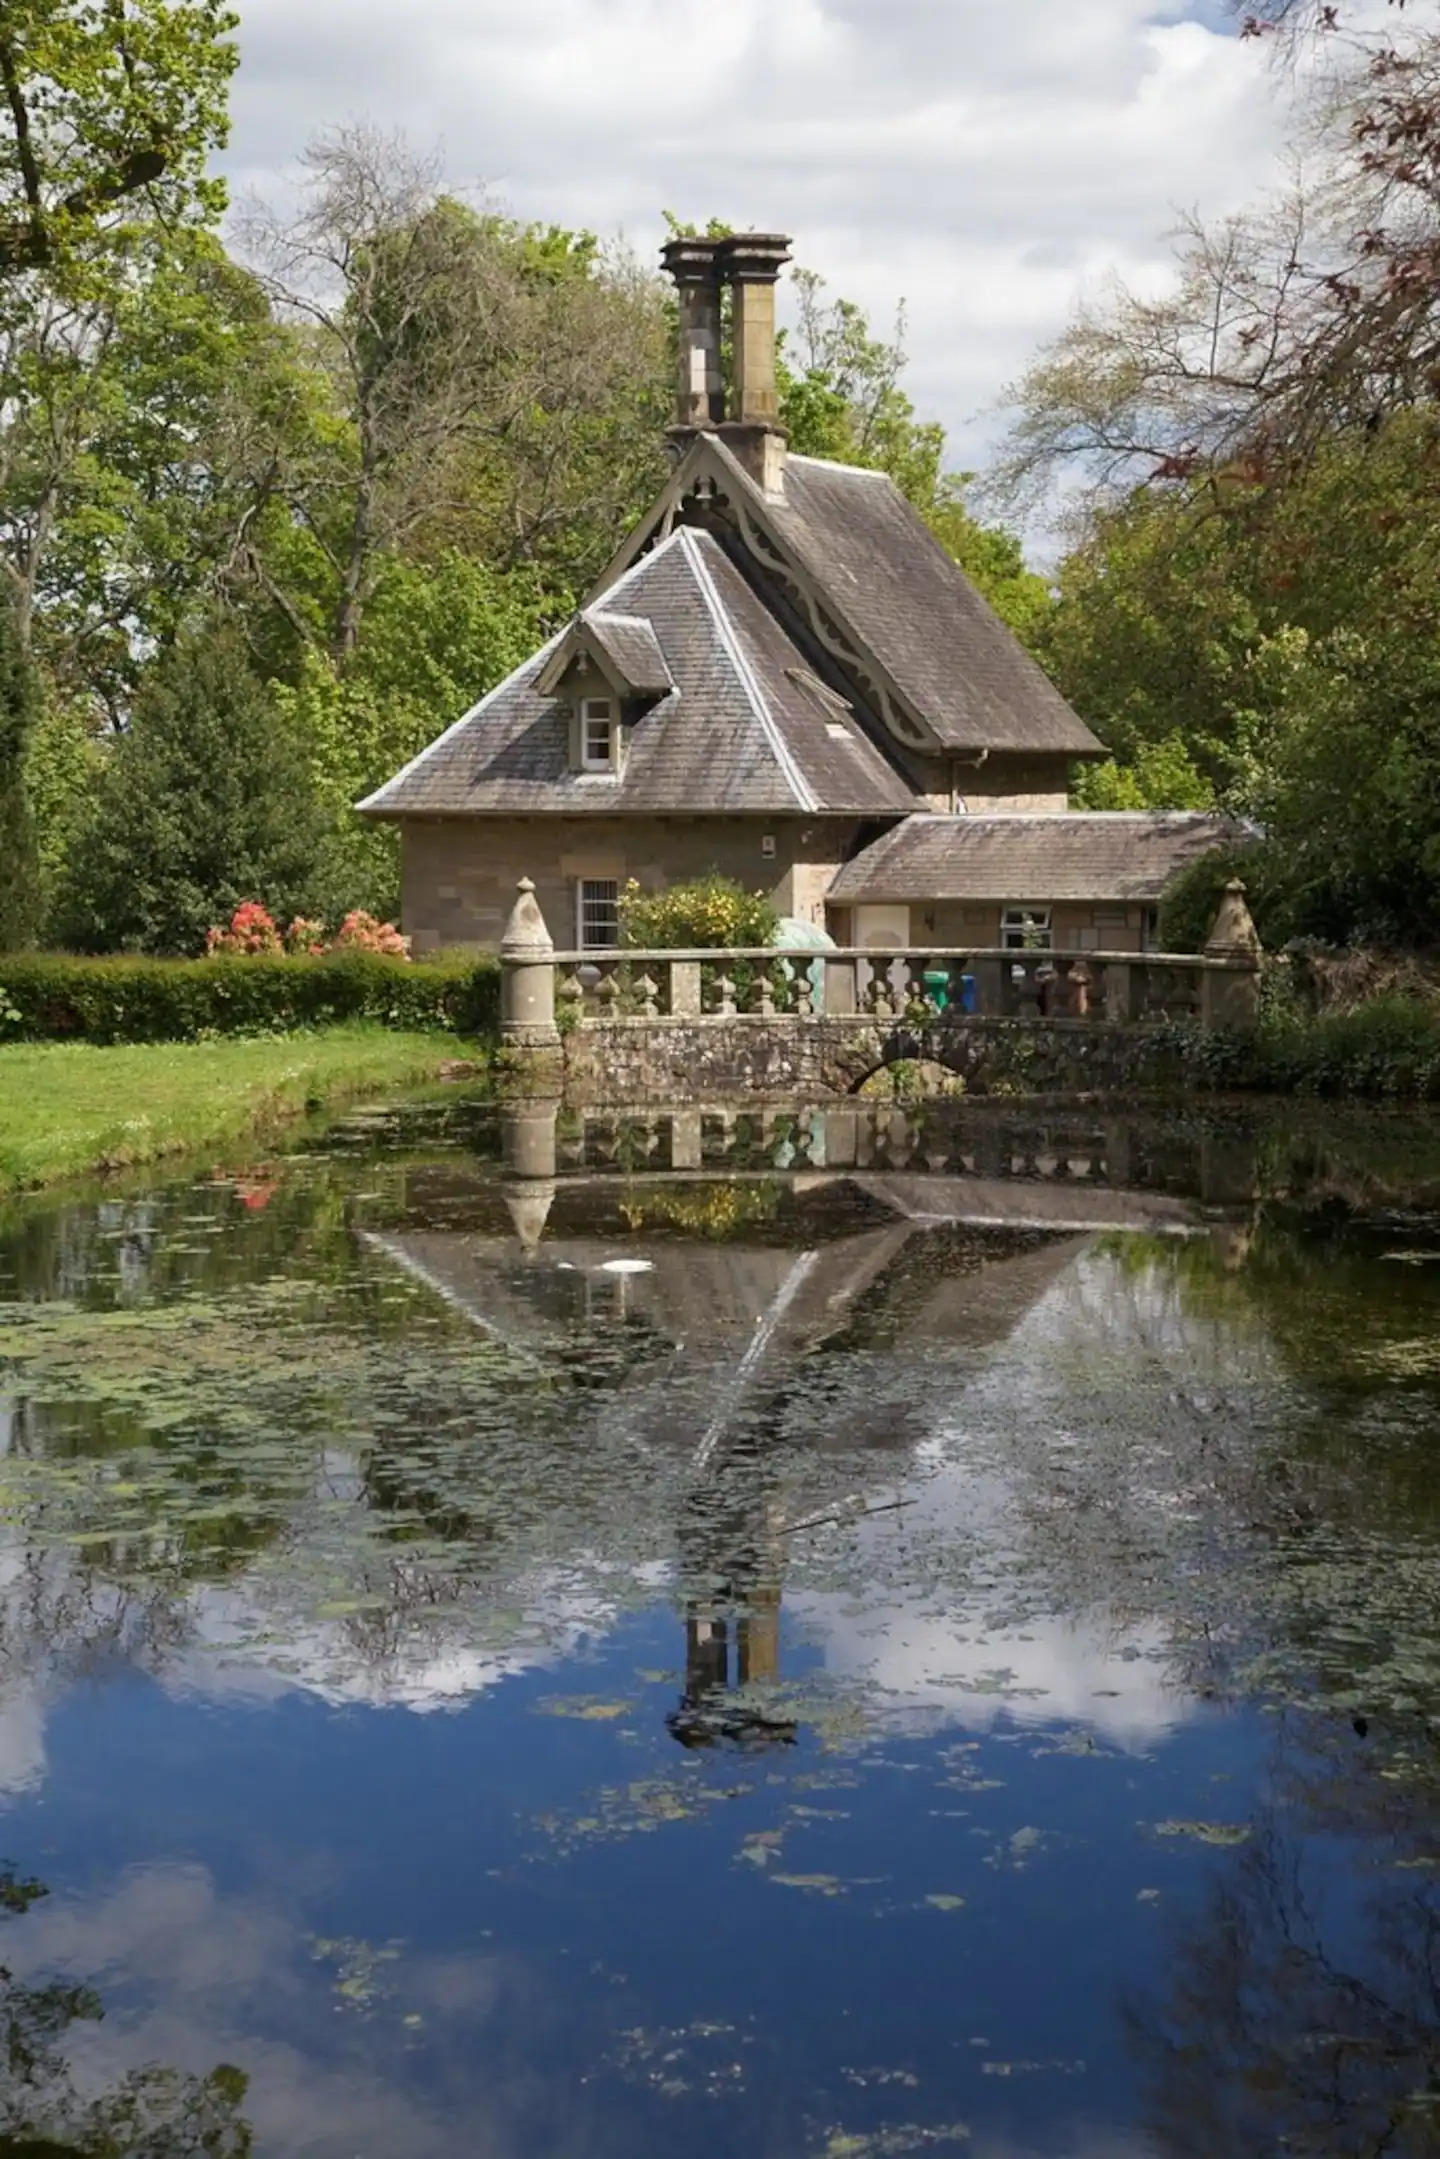 Duck pond at entrance to Falkland estate